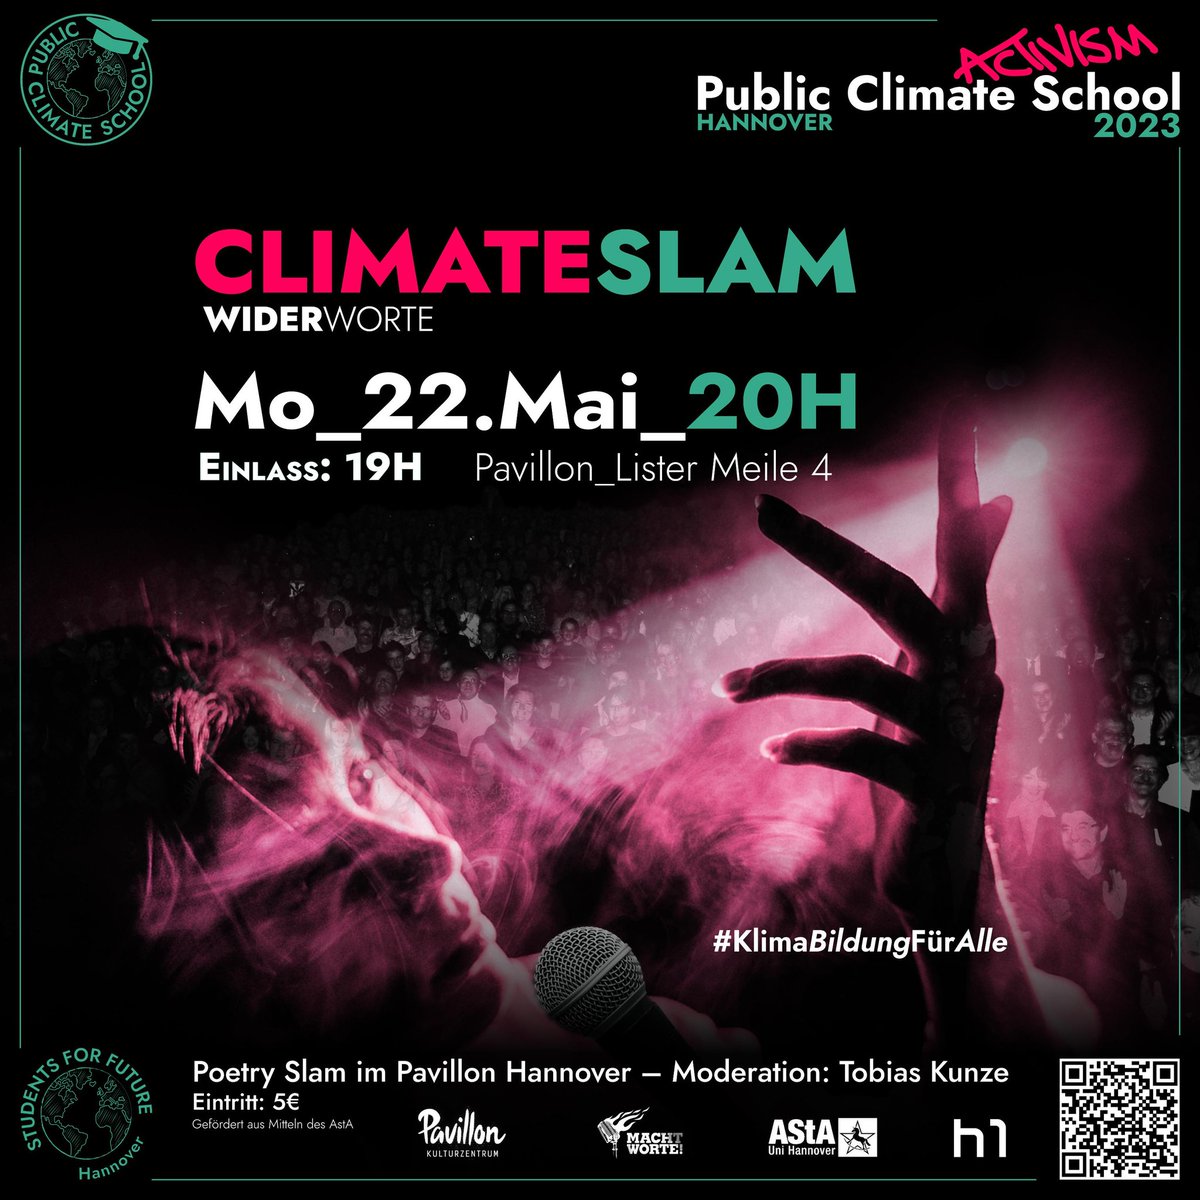 Am 22.05. findet direkt ein Highlight der #PublicClimateSchool statt:
Zusammen mit MachtWorte organisieren wir einen spannenden Poetry Slam, bei dem 6 Slammer*innen ihre Gedanken zur #Klimakrise teilen!
Das wird meeega! Kommt alle vorbei! 💚